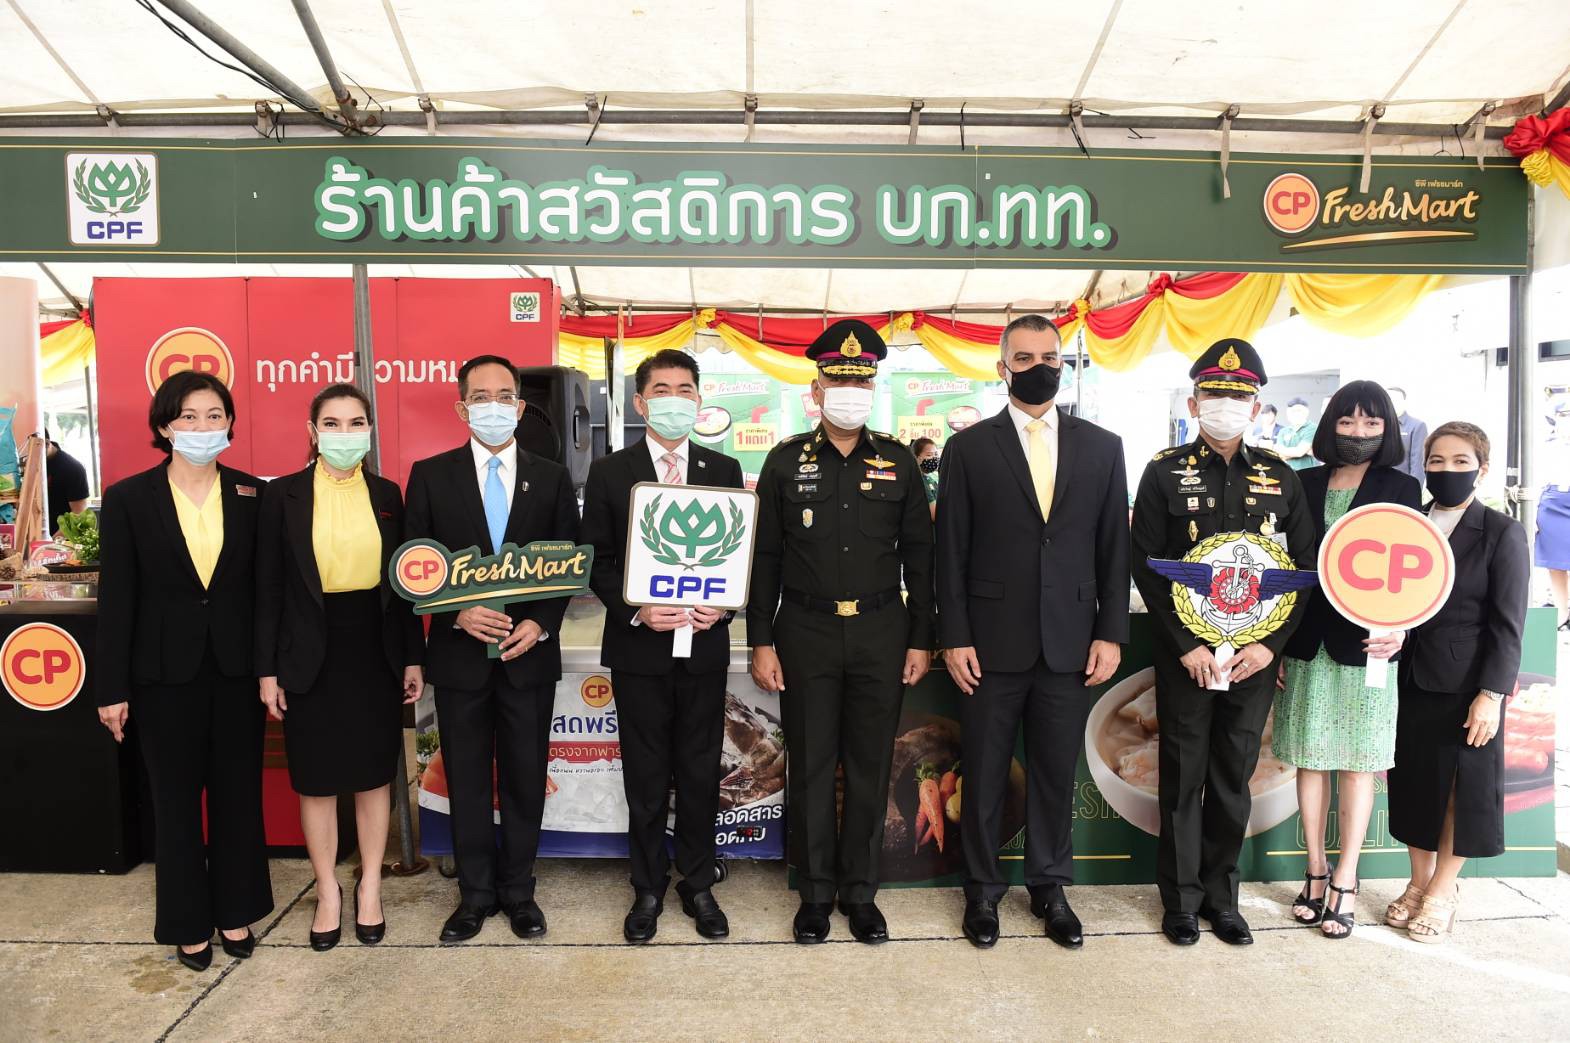 กองบัญชาการกองทัพไทย จับมือ CPF ต่อยอดความสำเร็จ ตั้งร้านค้าสวัสดิการ บก.ทท. ช่วยสร้างงาน-เพิ่มรายได้ให้ครอบครัวทหาร